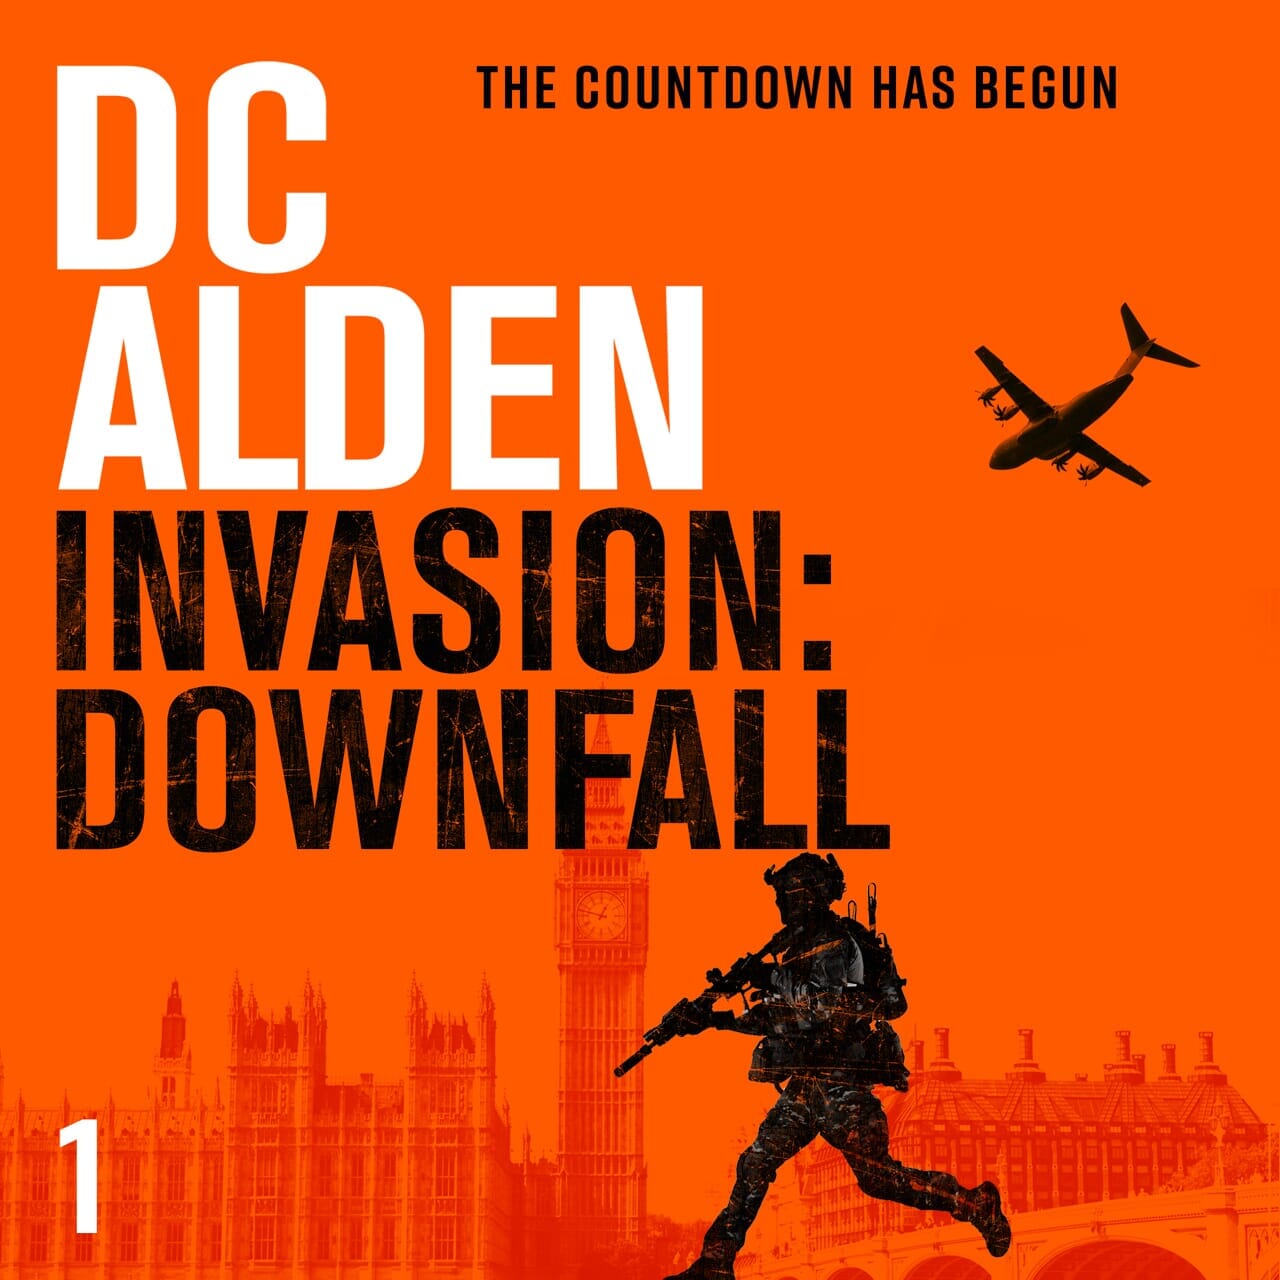 INVASION: DOWNFALL - Author DC Alden